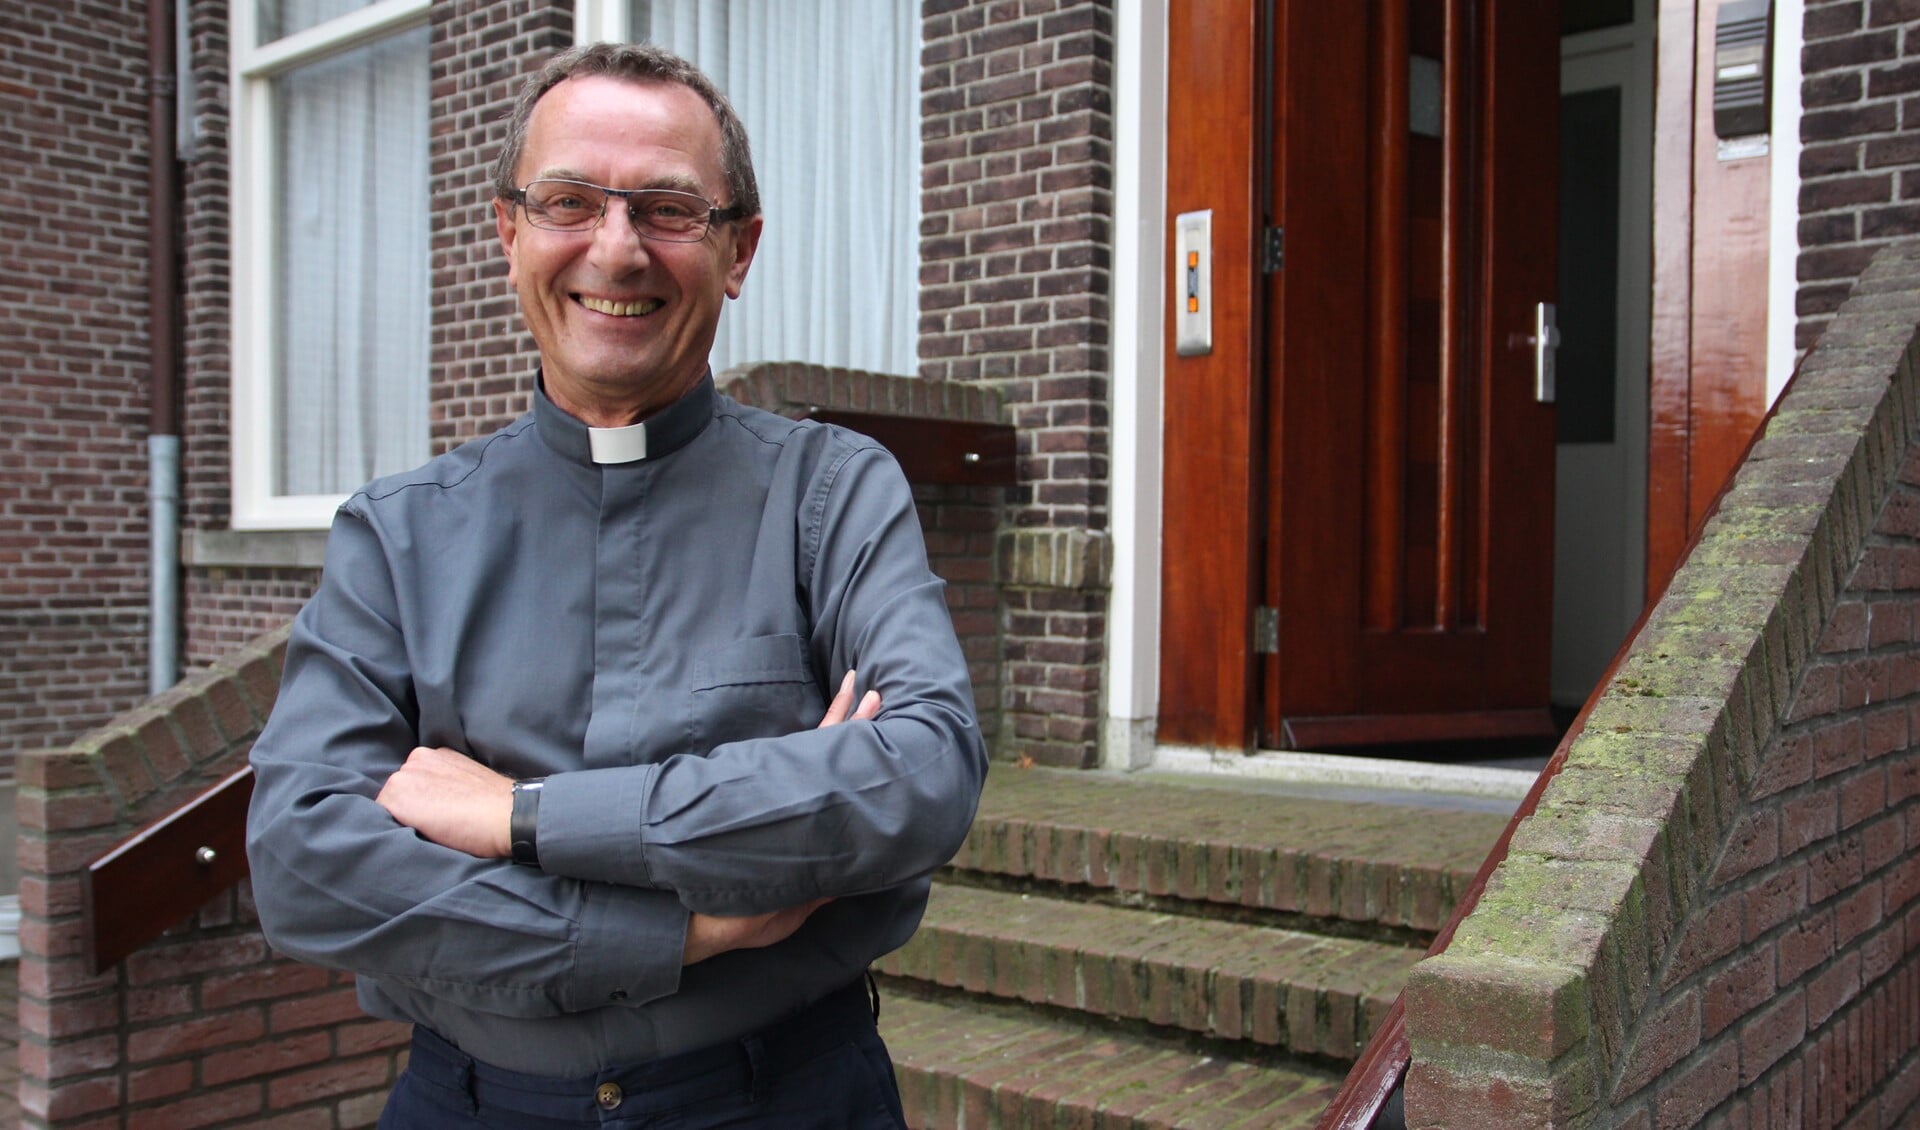 Stefan Bladowski woont naast de kerk in Bleiswijk. Deze foto is gemaakt eind 2017 toen hij net in de parochie werkzaam was. 